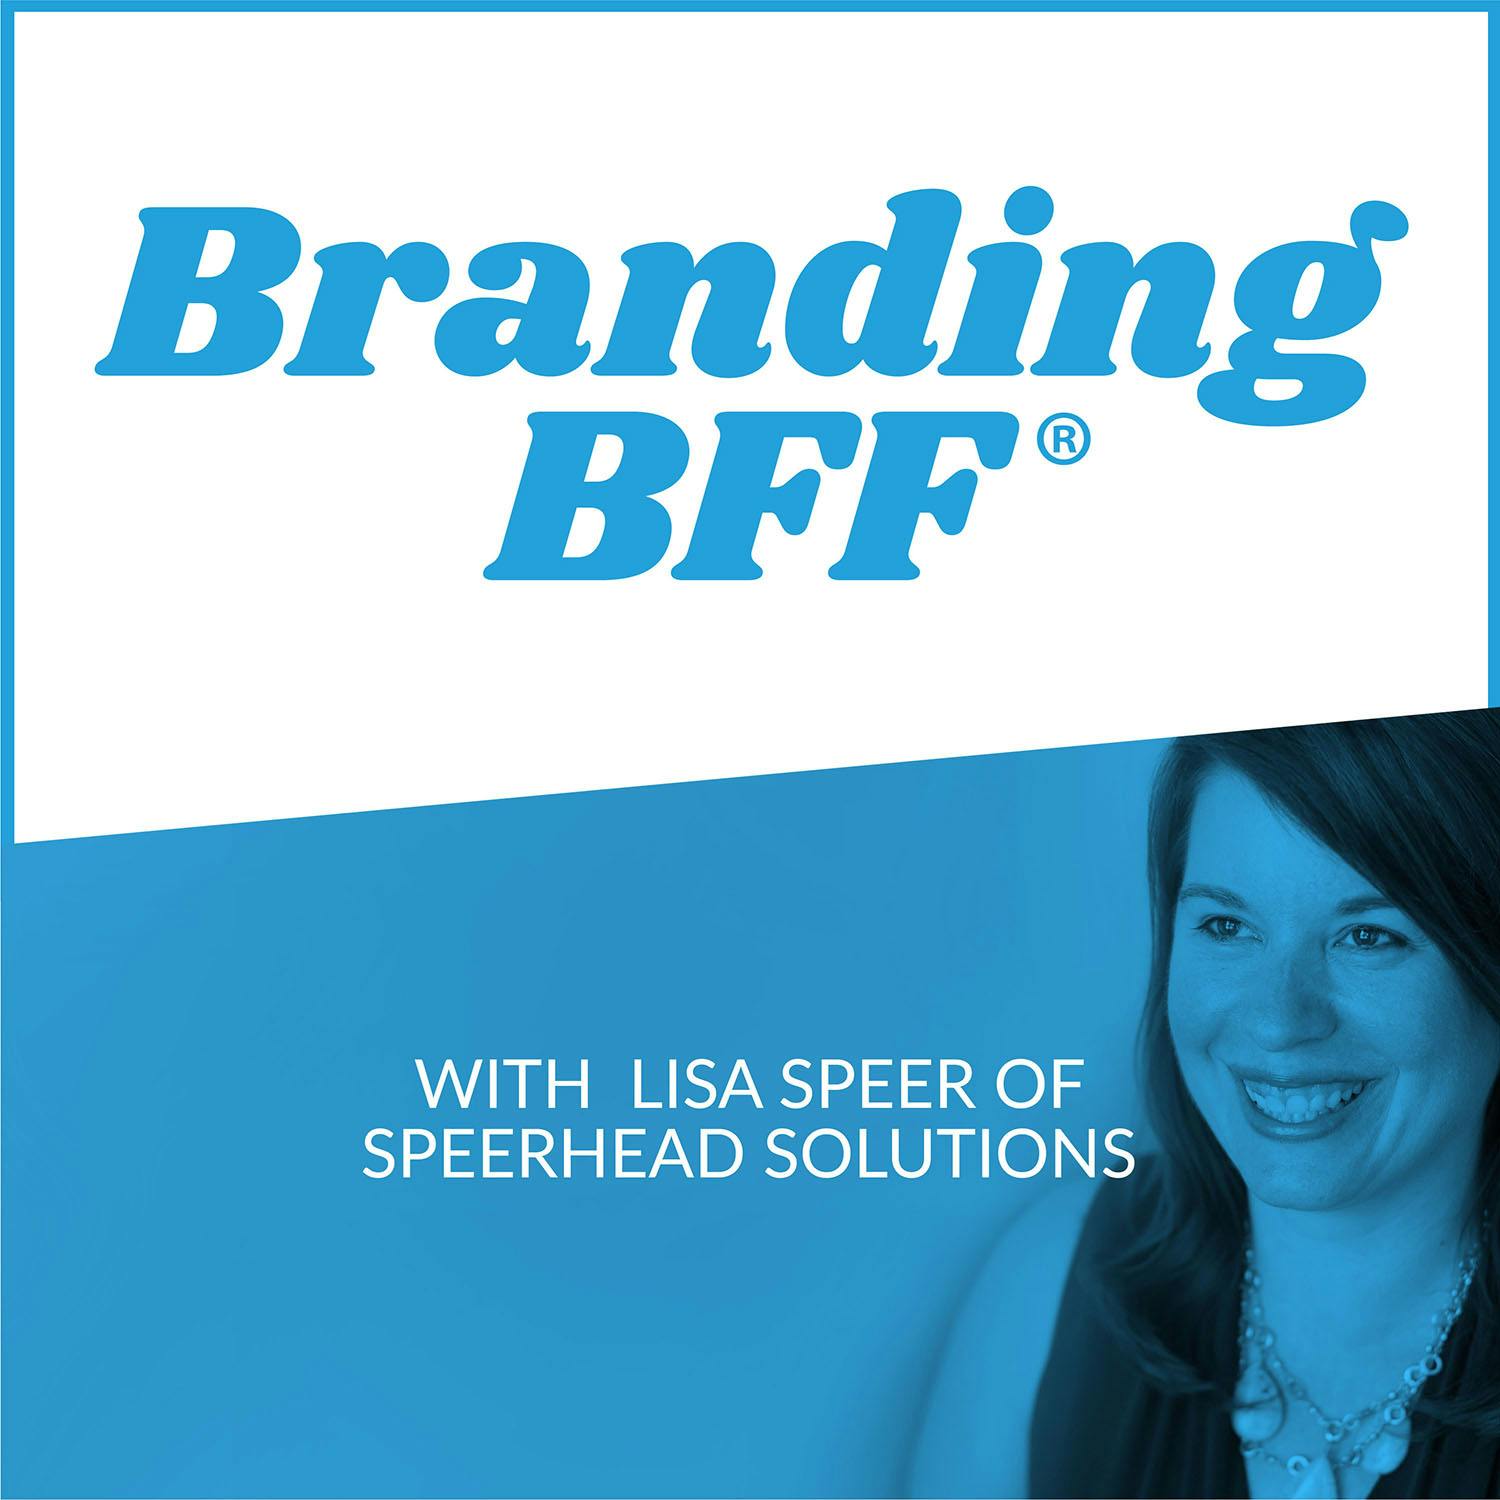 Branding BFF®